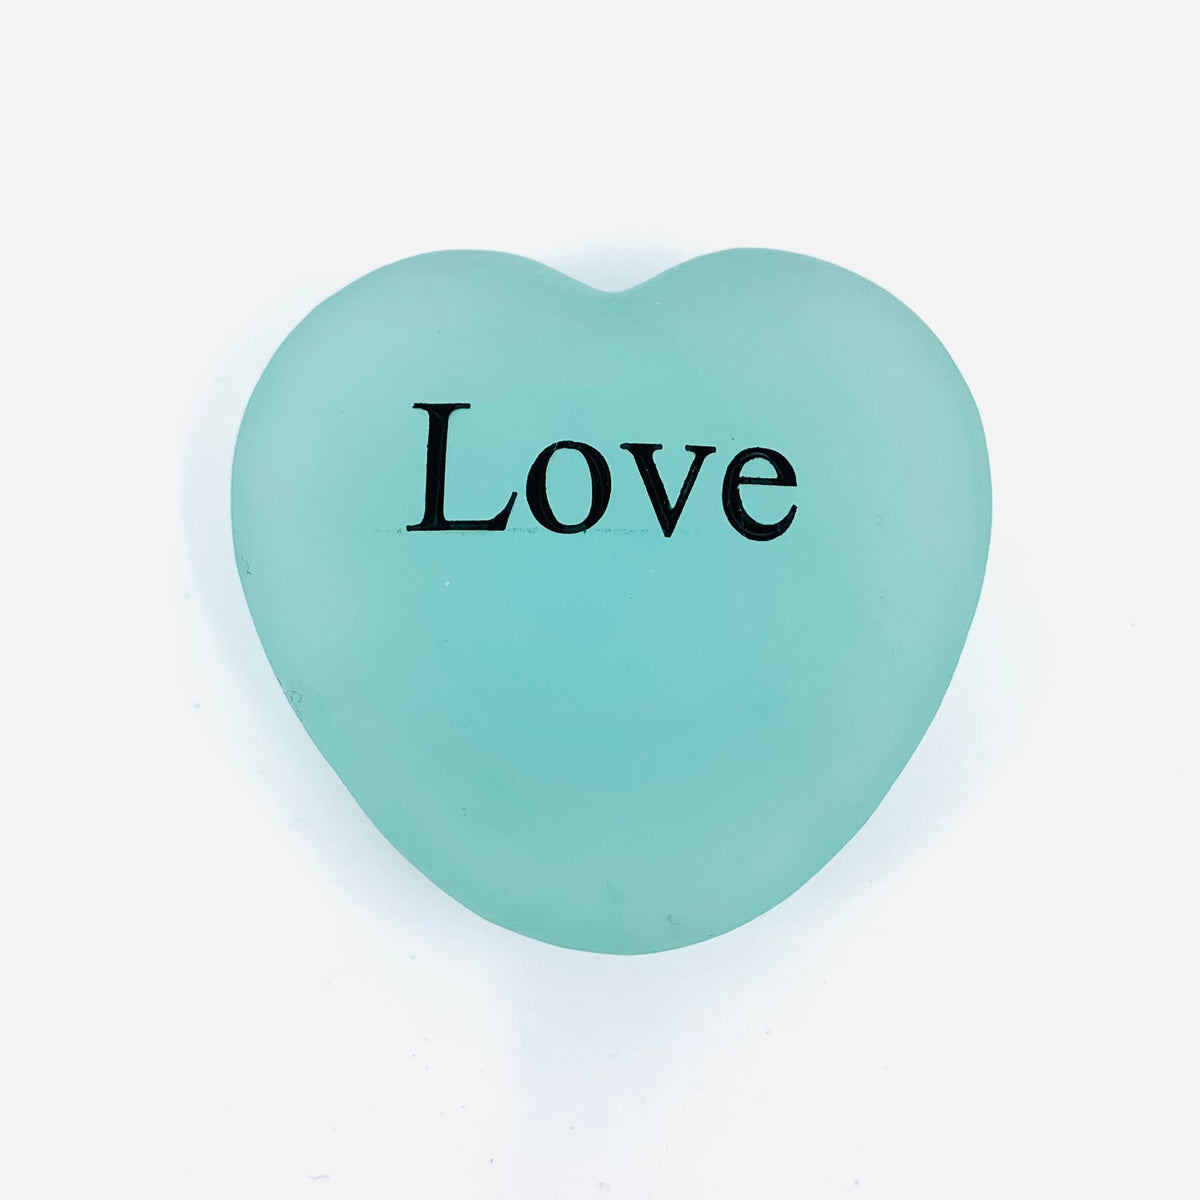 Heart Shaped Garden Stone Luke Adams Glass Blowing Studio Love 